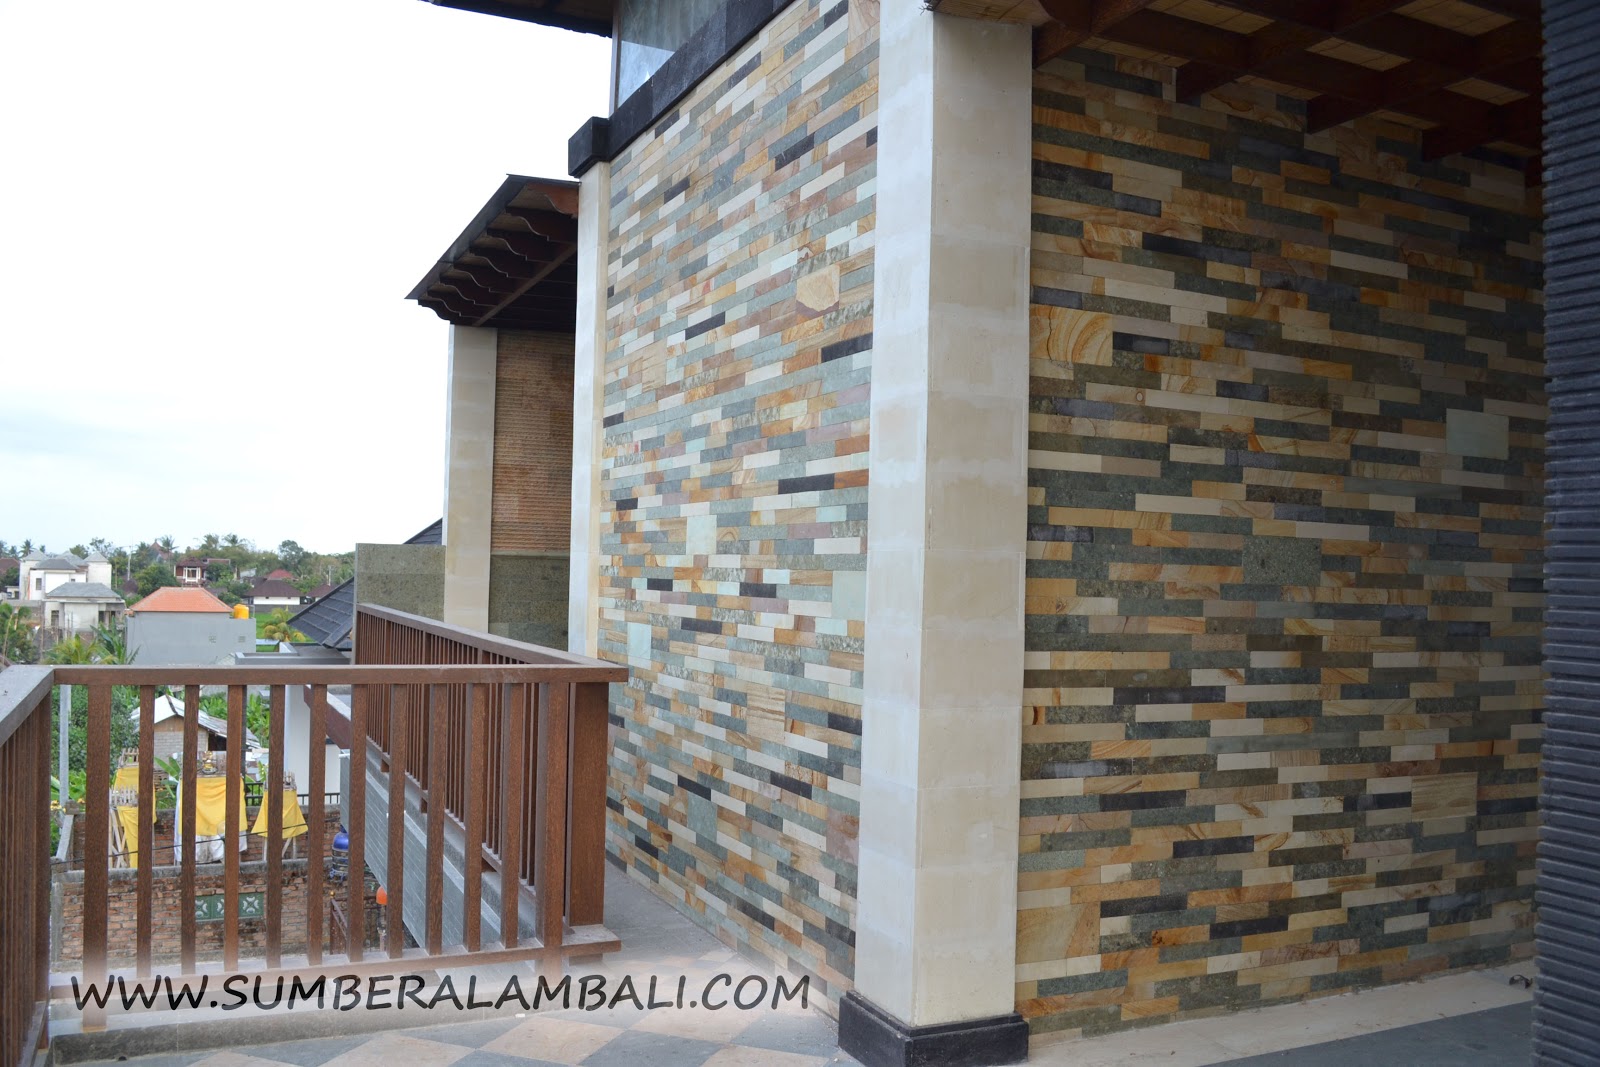  Teras - 15 model keramik dinding motif batu alam pada teras rumah